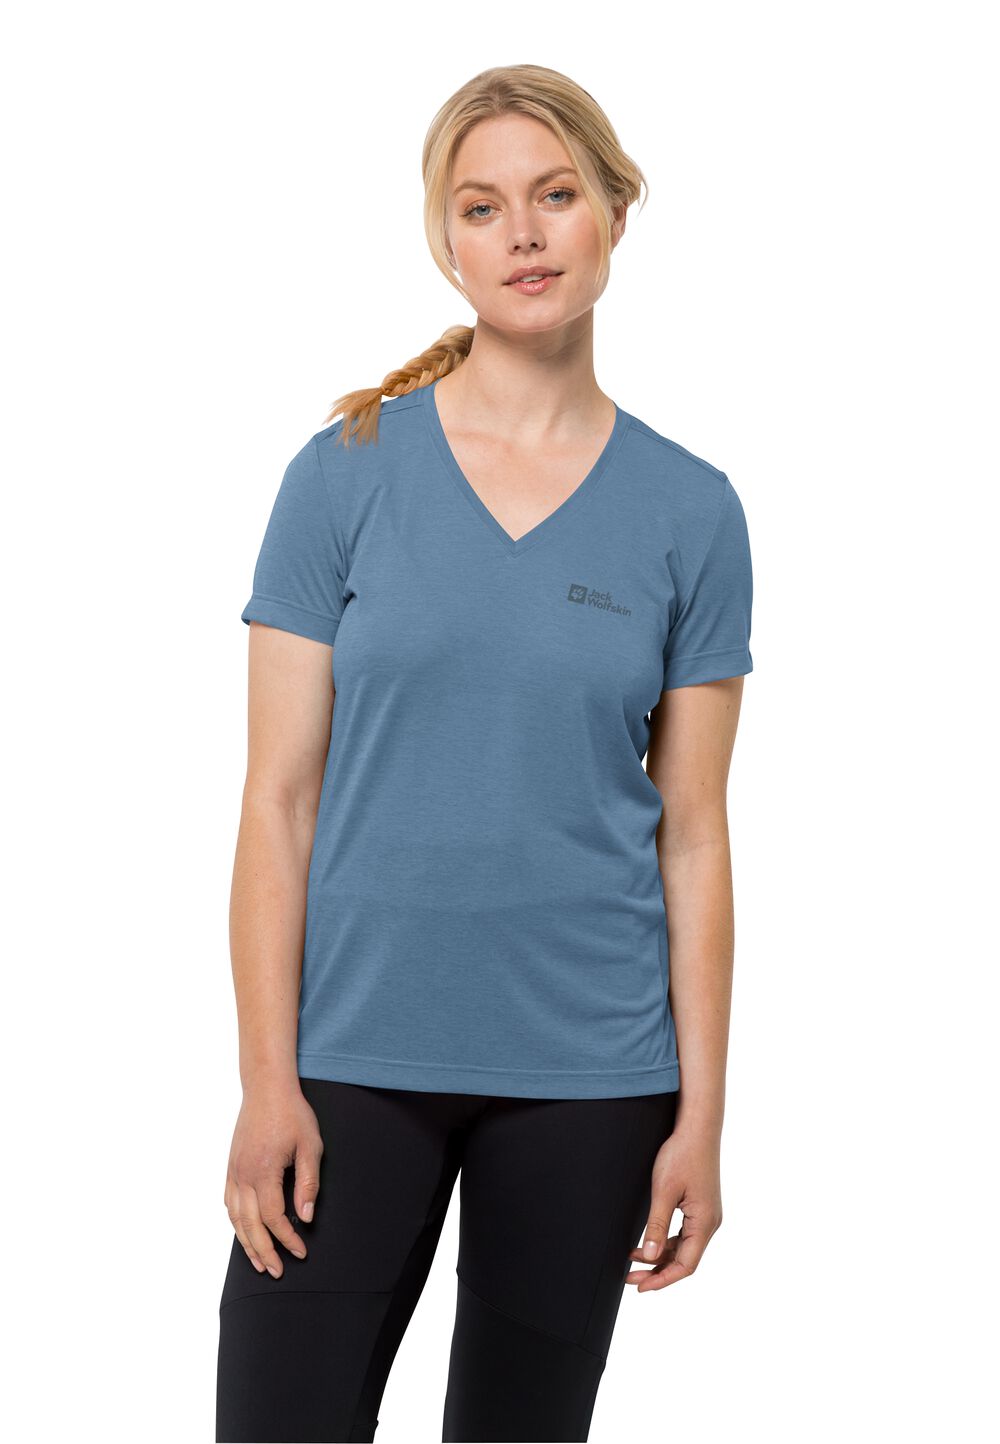 Jack Wolfskin Crosstrail T-Shirt Women Functioneel shirt Dames L elemental blue elemental blue